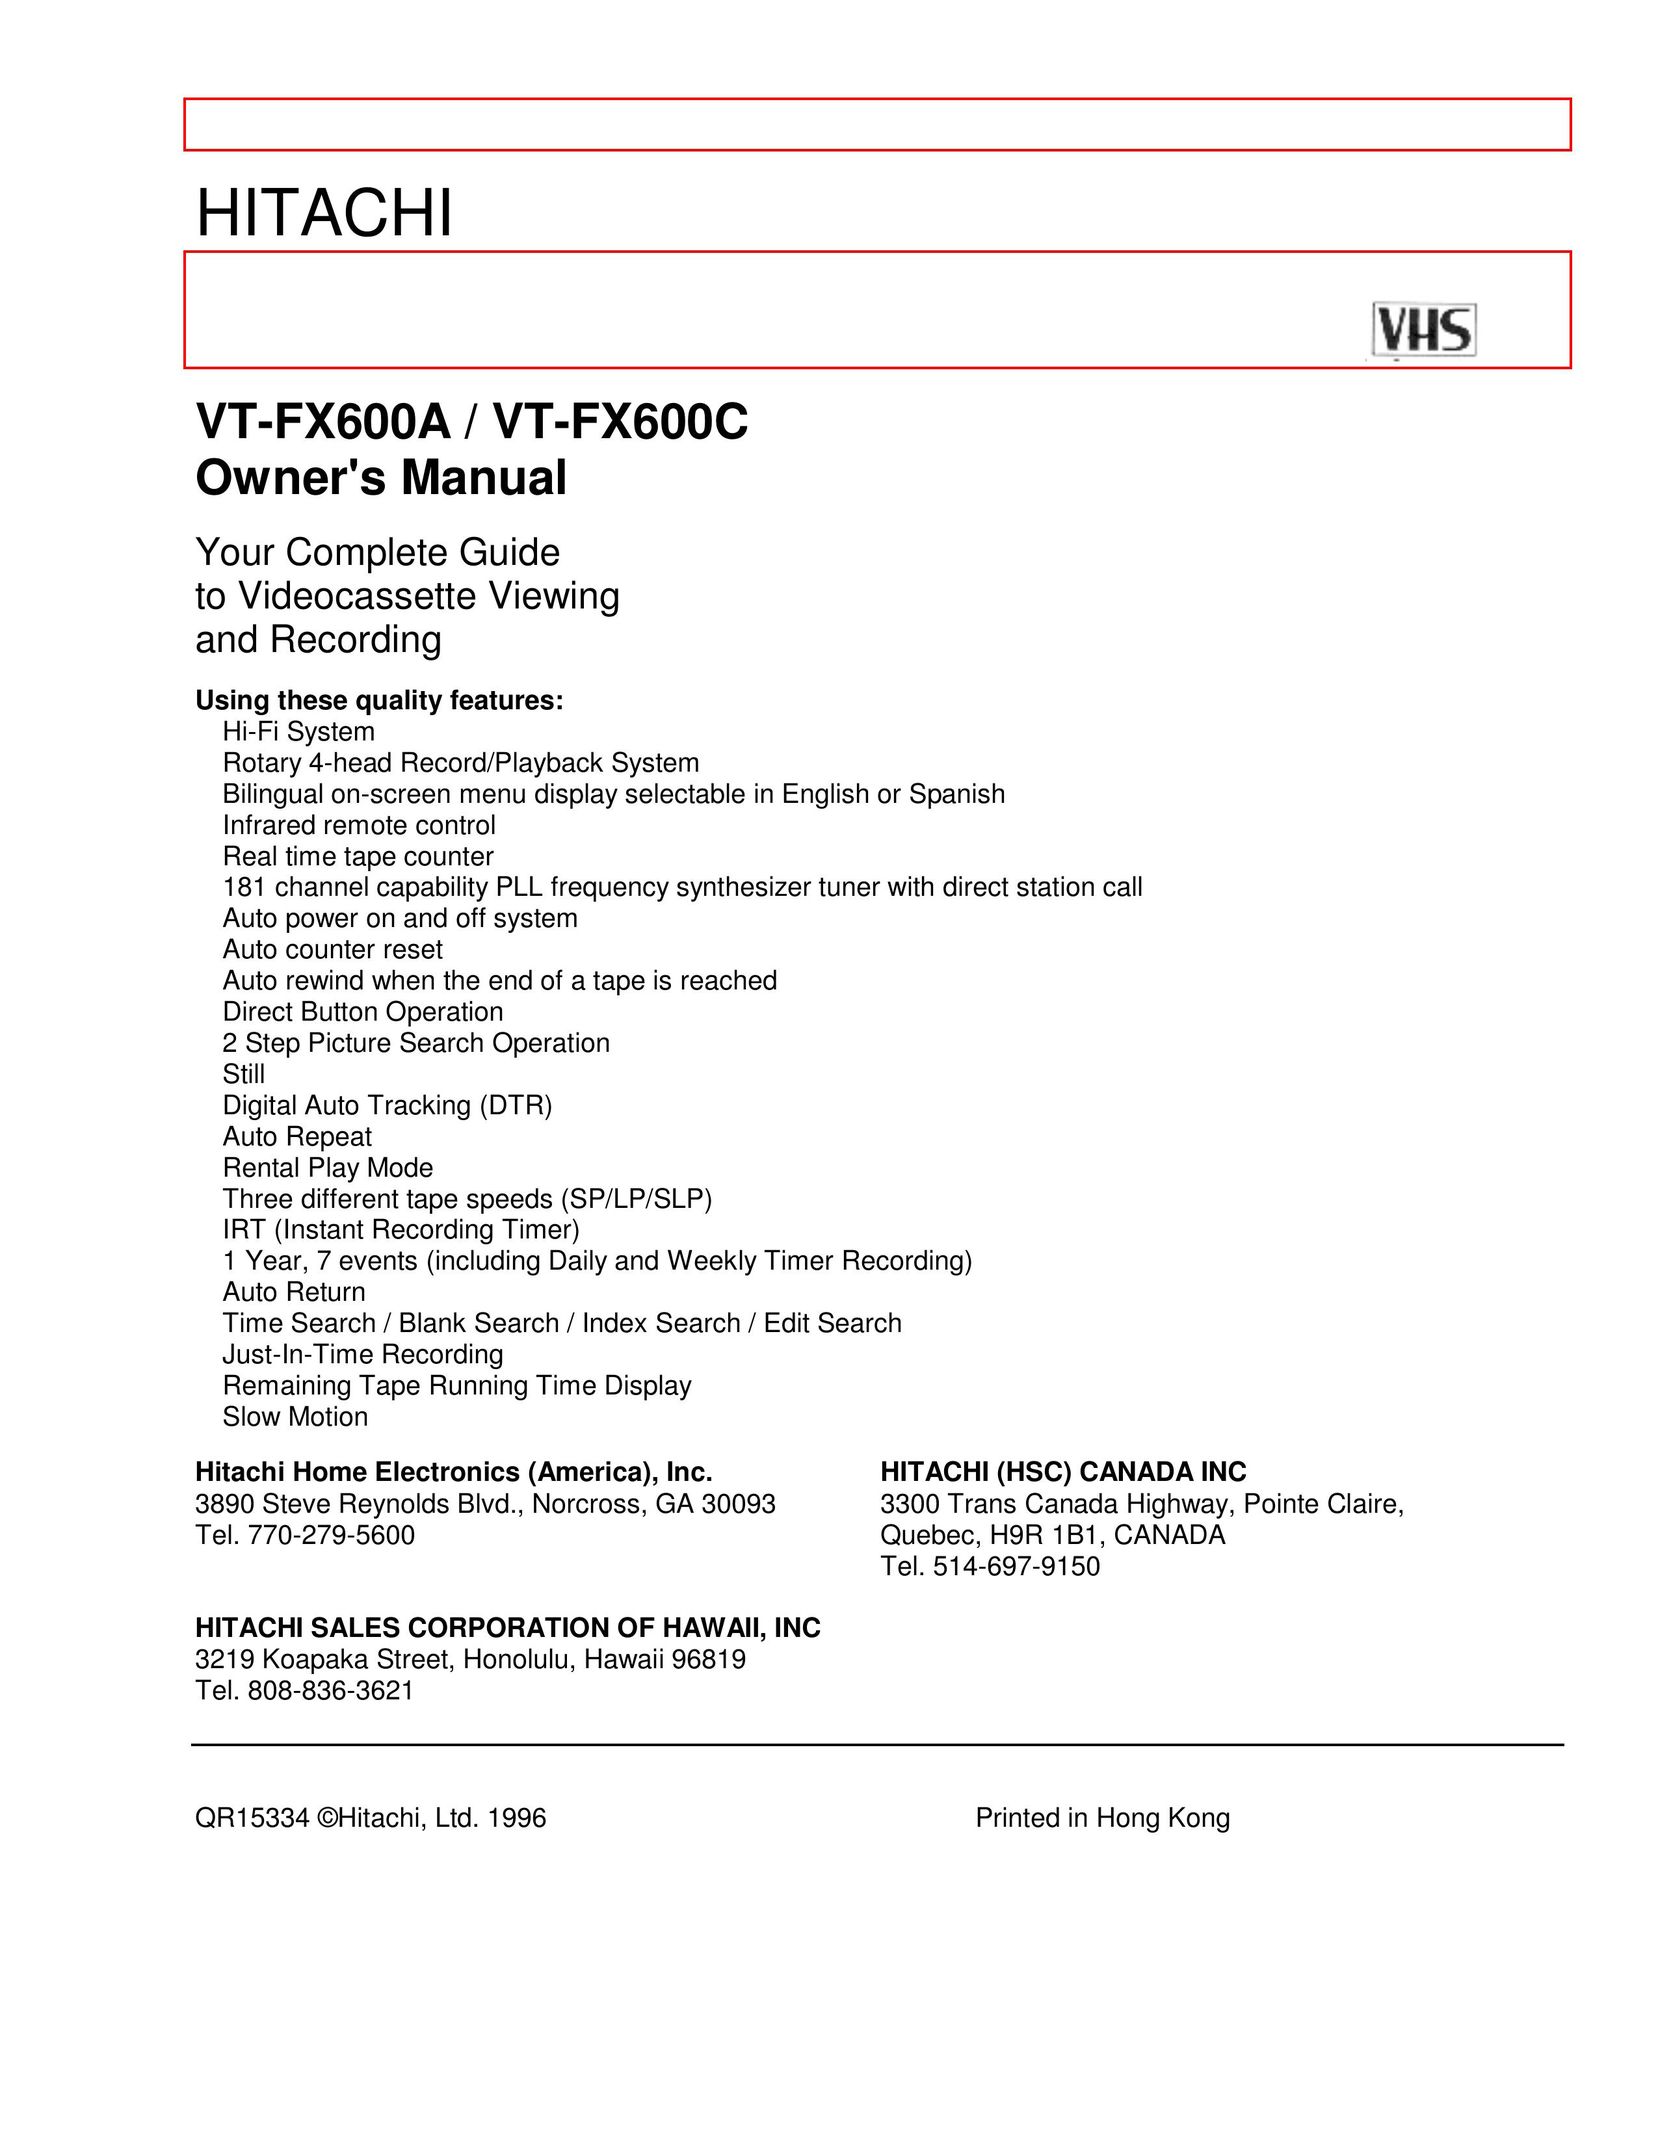 Hitachi VT-FX600A, VT-FX600C VCR User Manual